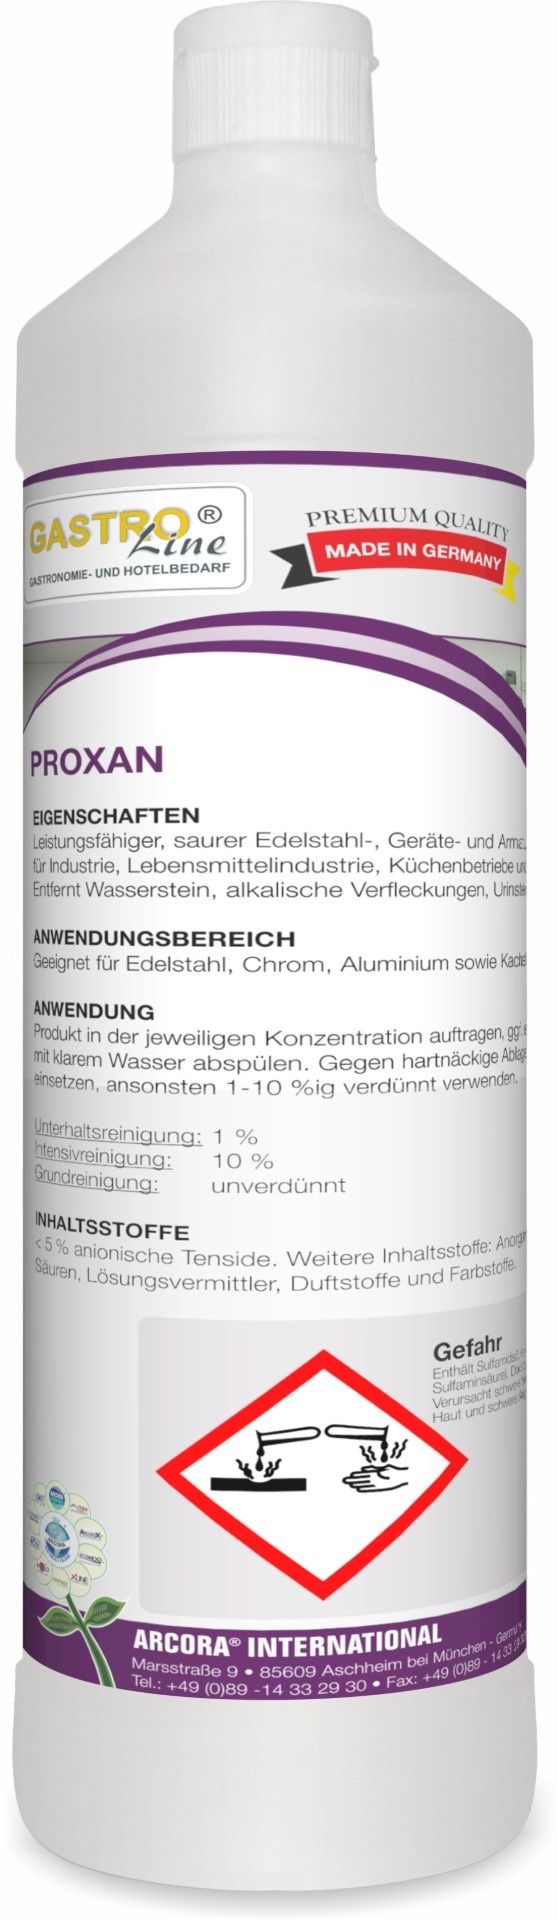 Proxan | Edelstahl- & Gerätereiniger | 1 Liter Flasche